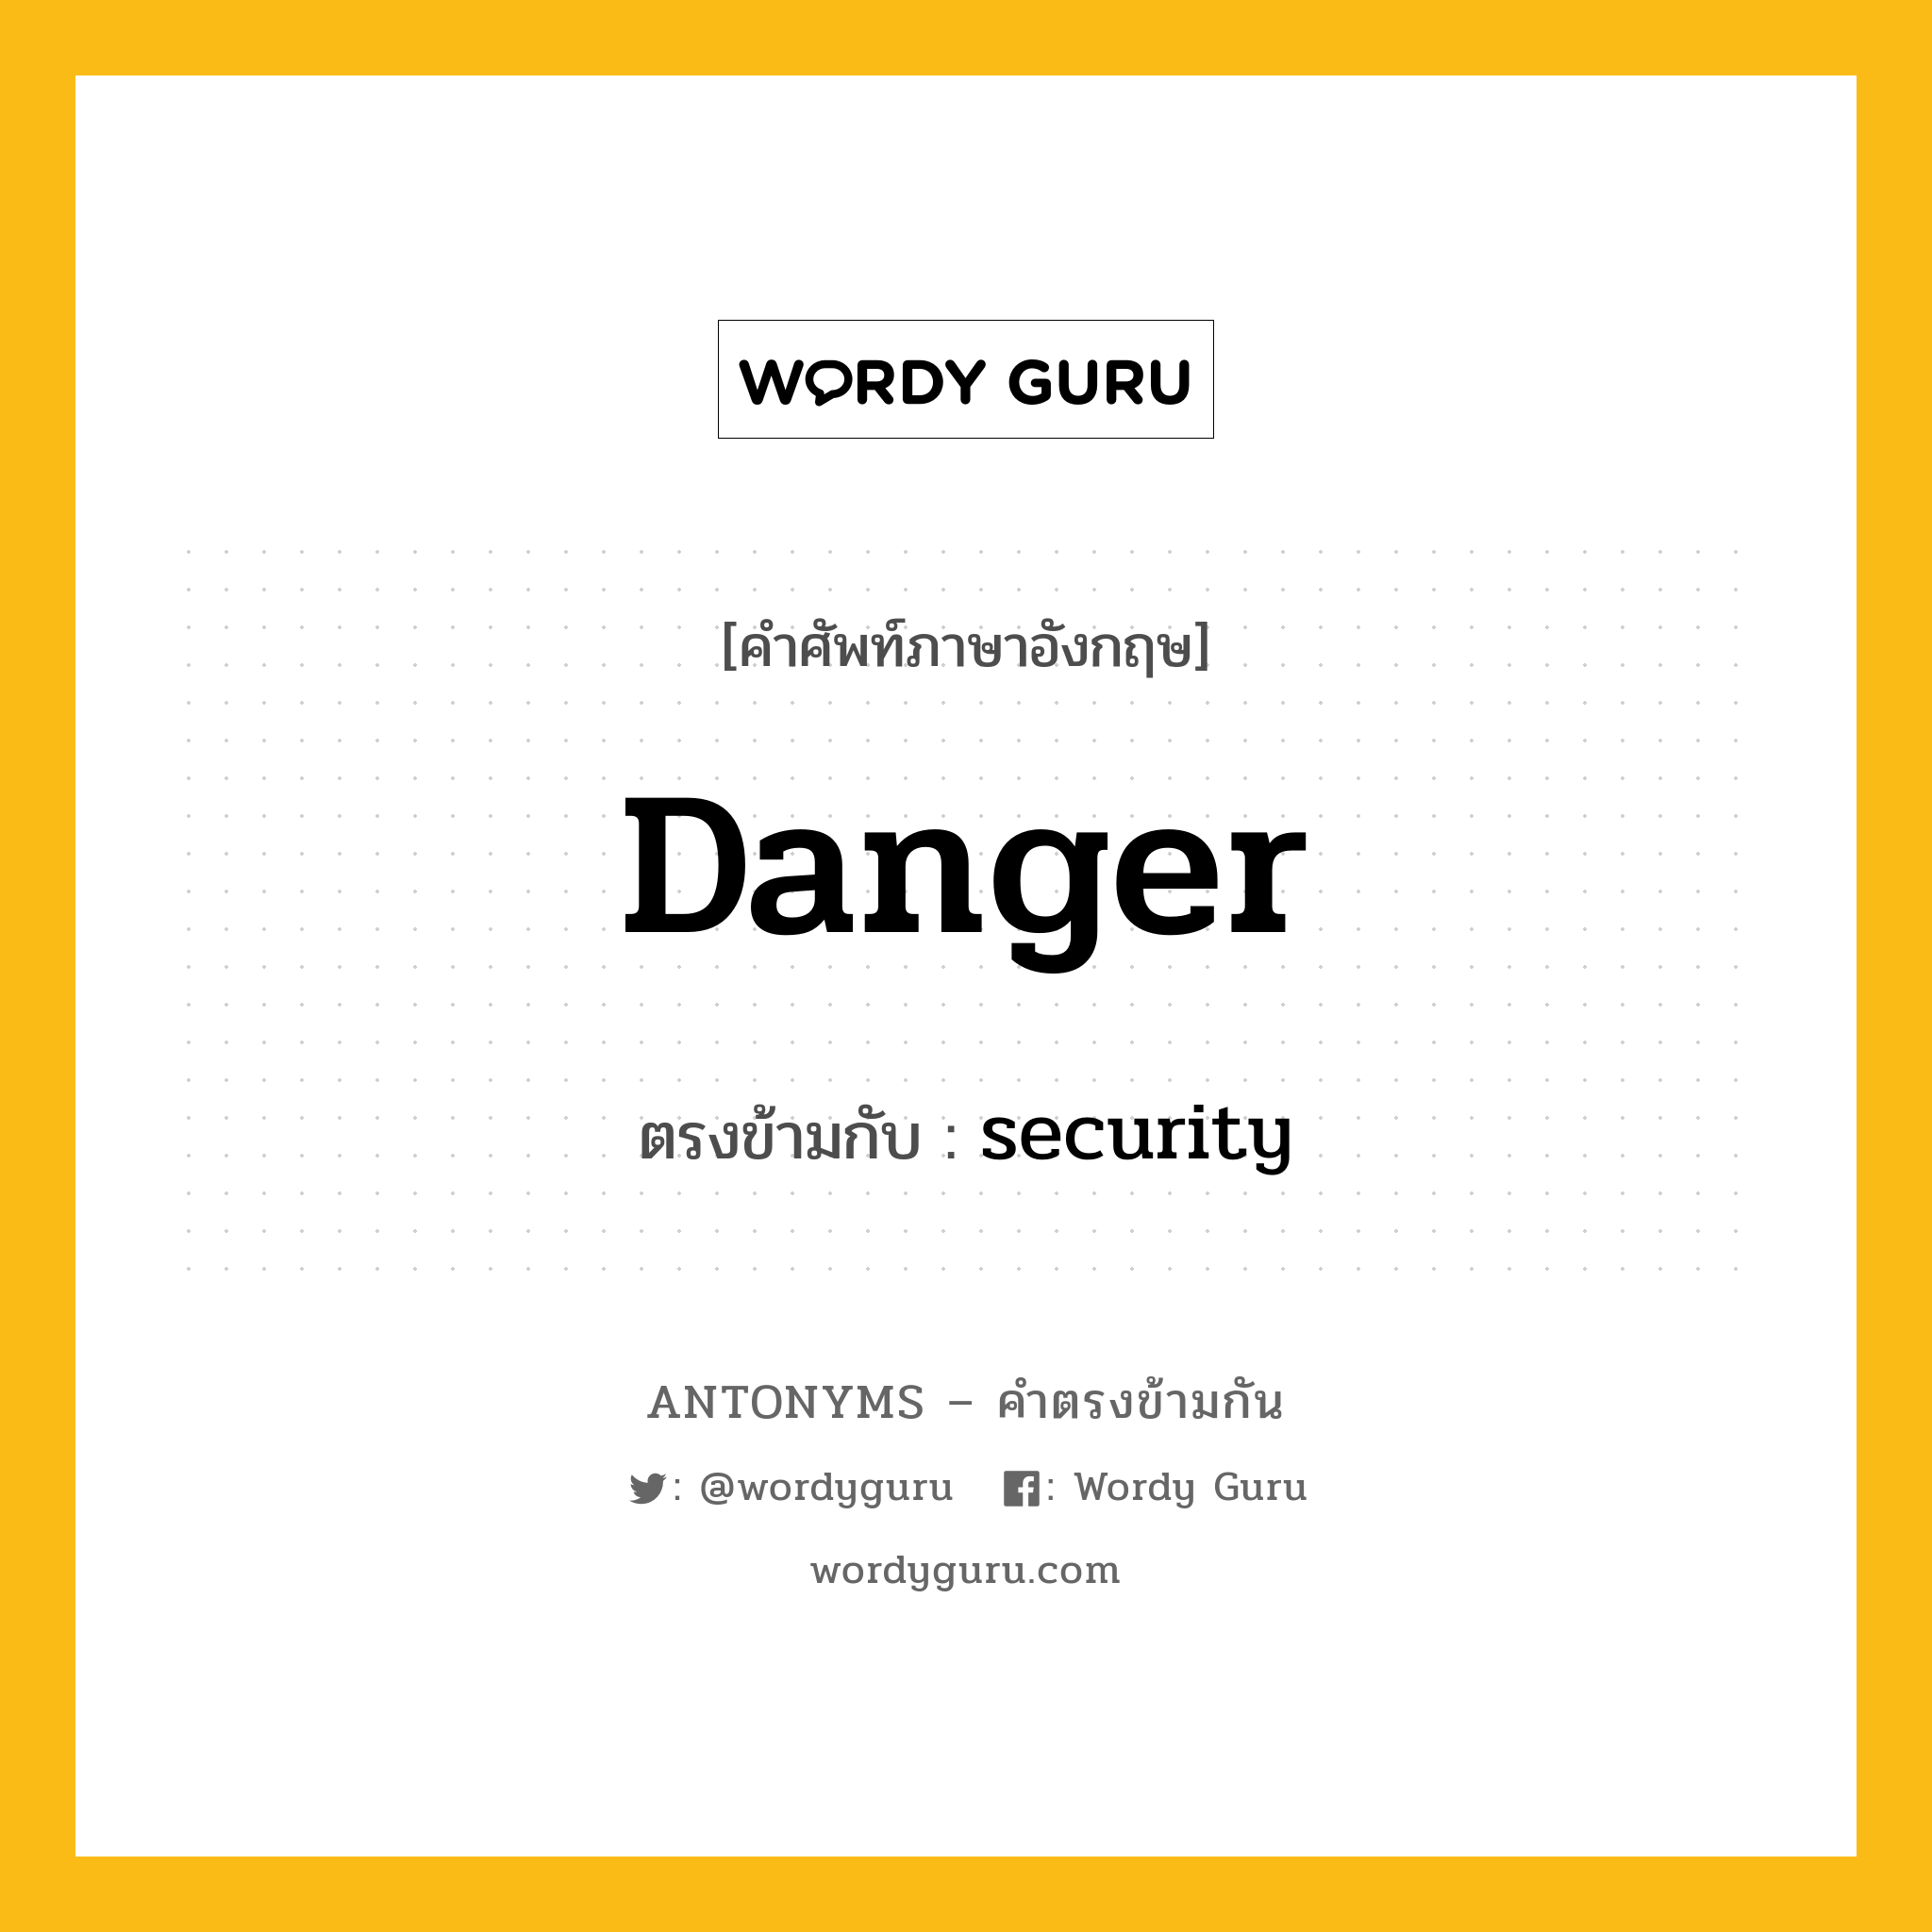 danger เป็นคำตรงข้ามกับคำไหนบ้าง?, คำศัพท์ภาษาอังกฤษ danger ตรงข้ามกับ security หมวด security